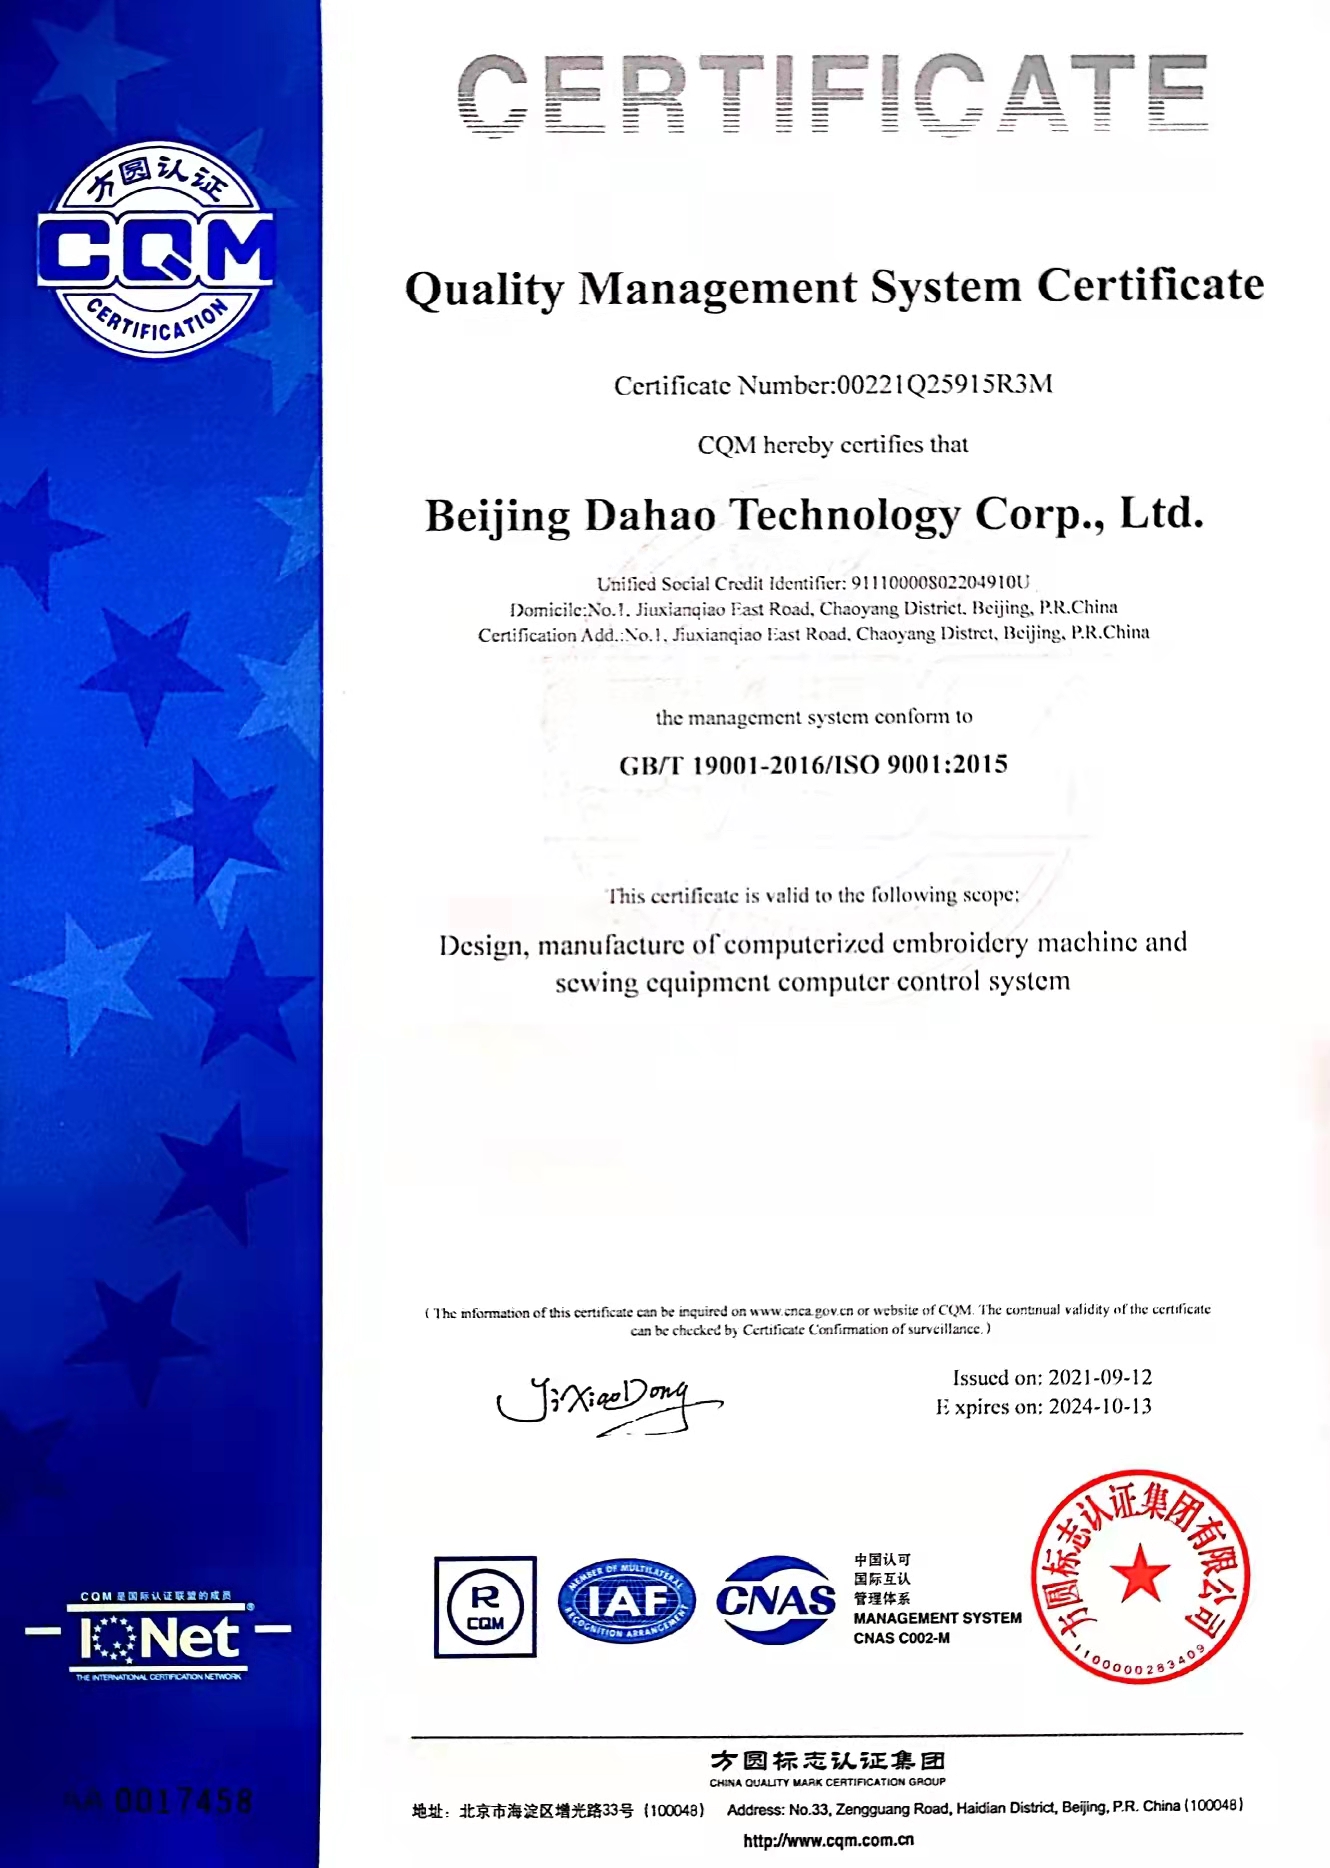 红宝石hbs平台官方科技质量管理体系证书-英文版